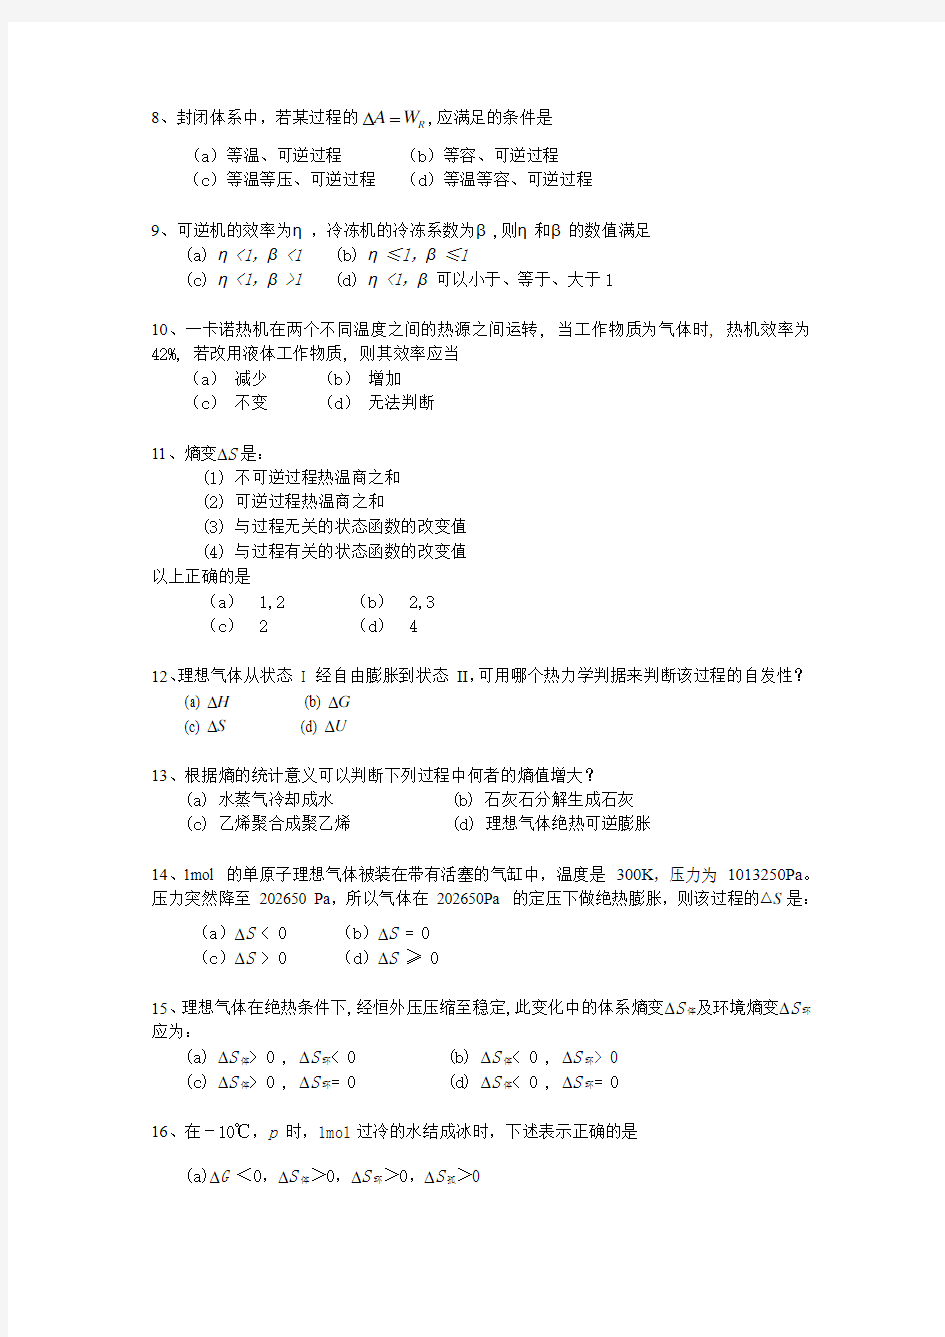 浙江工业大学物理化学2009- 2010(2)学年复习题2